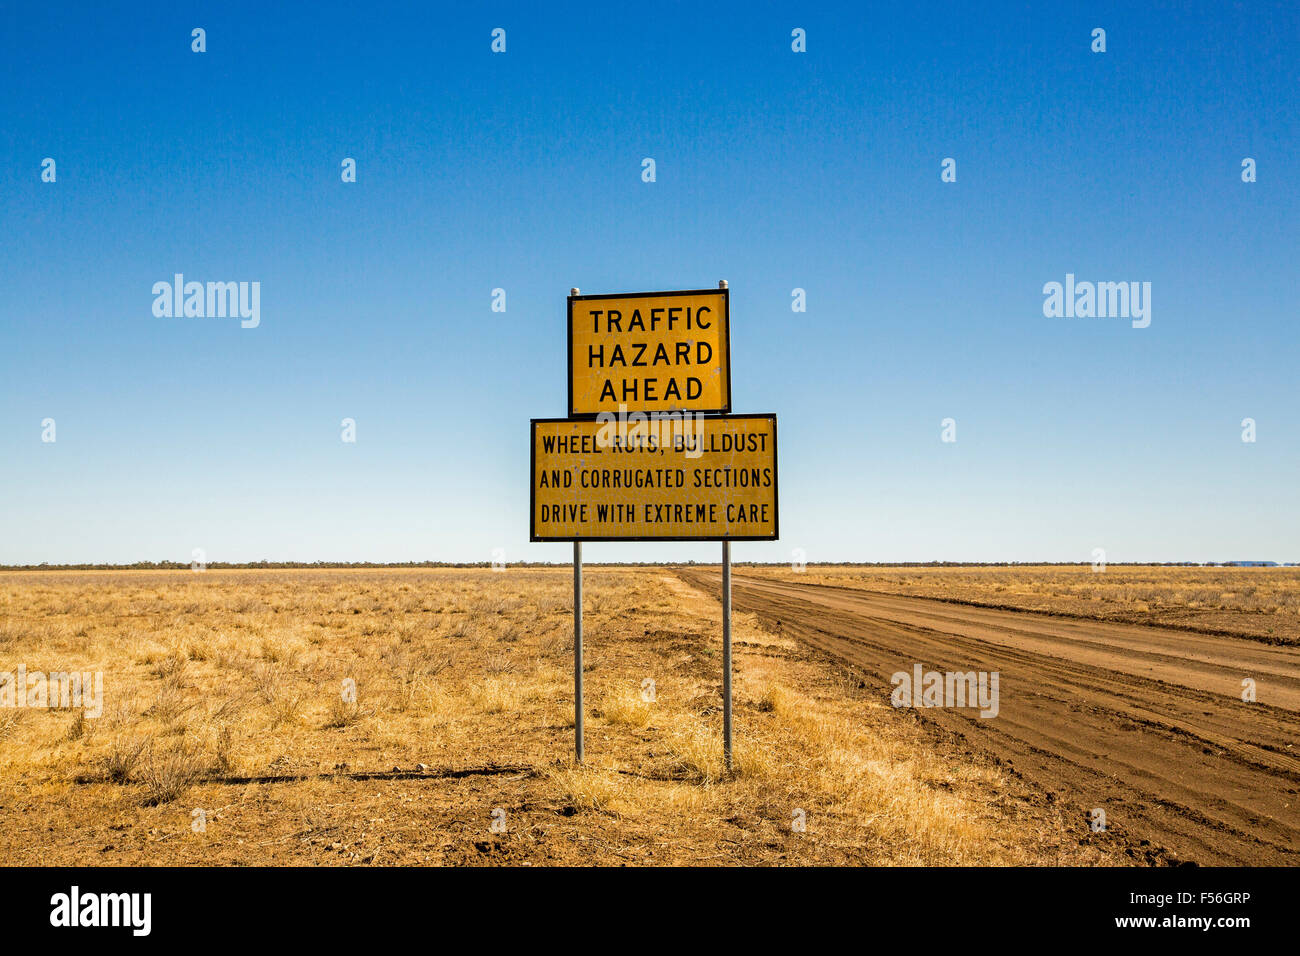 Signe par Australian Outback road, à travers plaines déboisées à horizon lointain sous ciel bleu, d'avertissement de danger pour la circulation de l'avant et de l'état des routes Banque D'Images